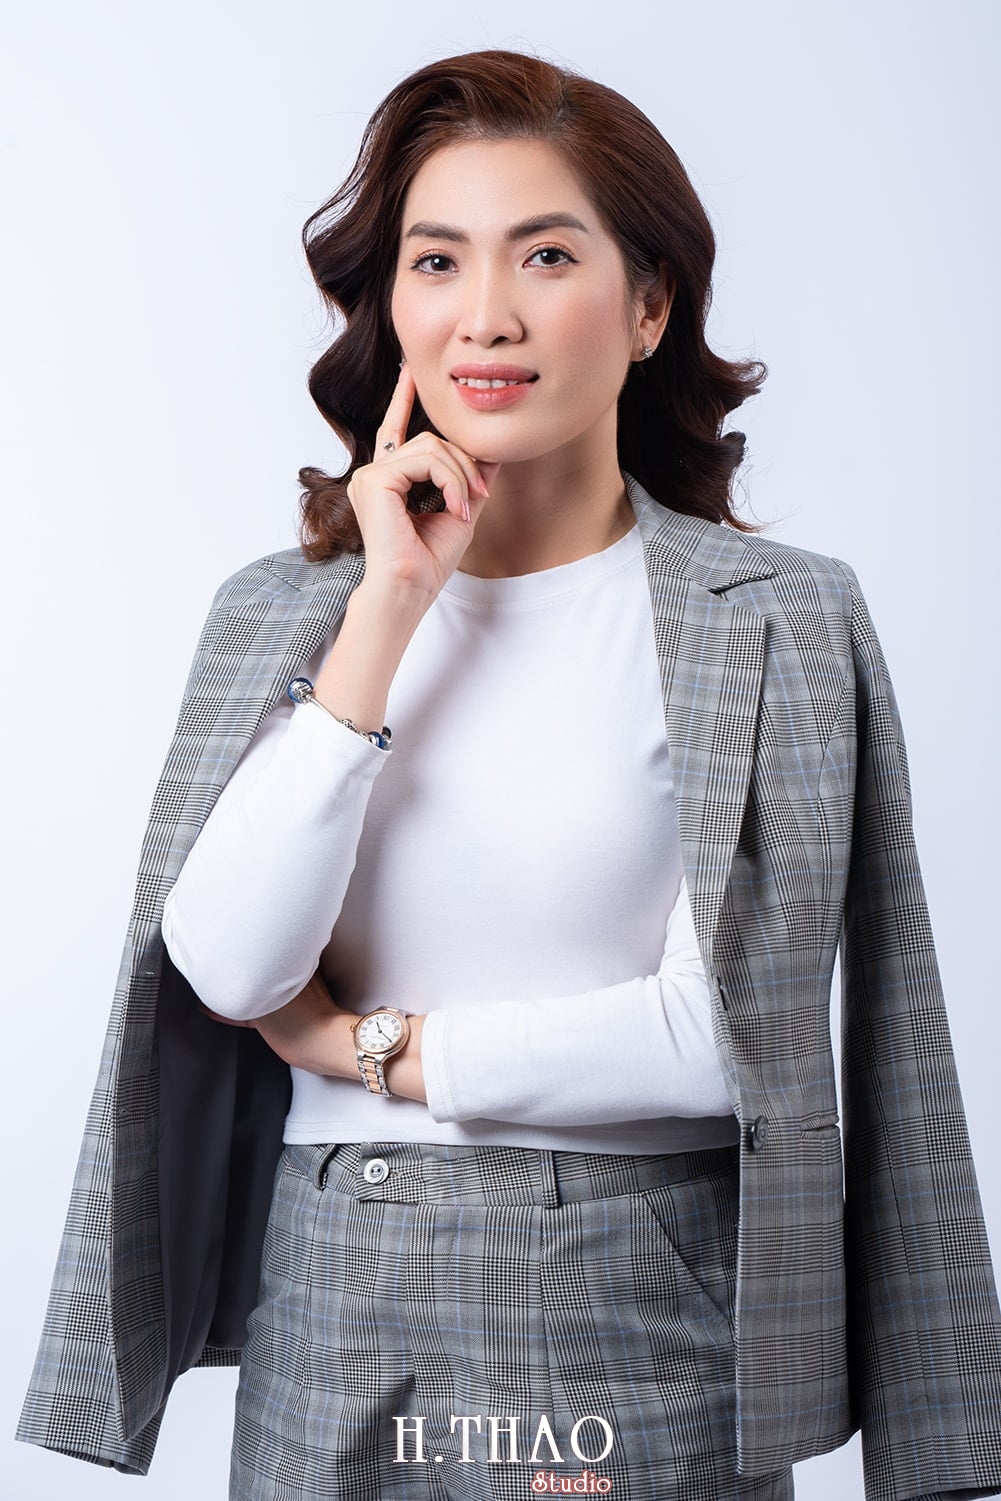 Doanh nhan nu dep 1 - Album doanh nhân BĐS Ms.Nhung đẹp yêu kiều - HThao Studio